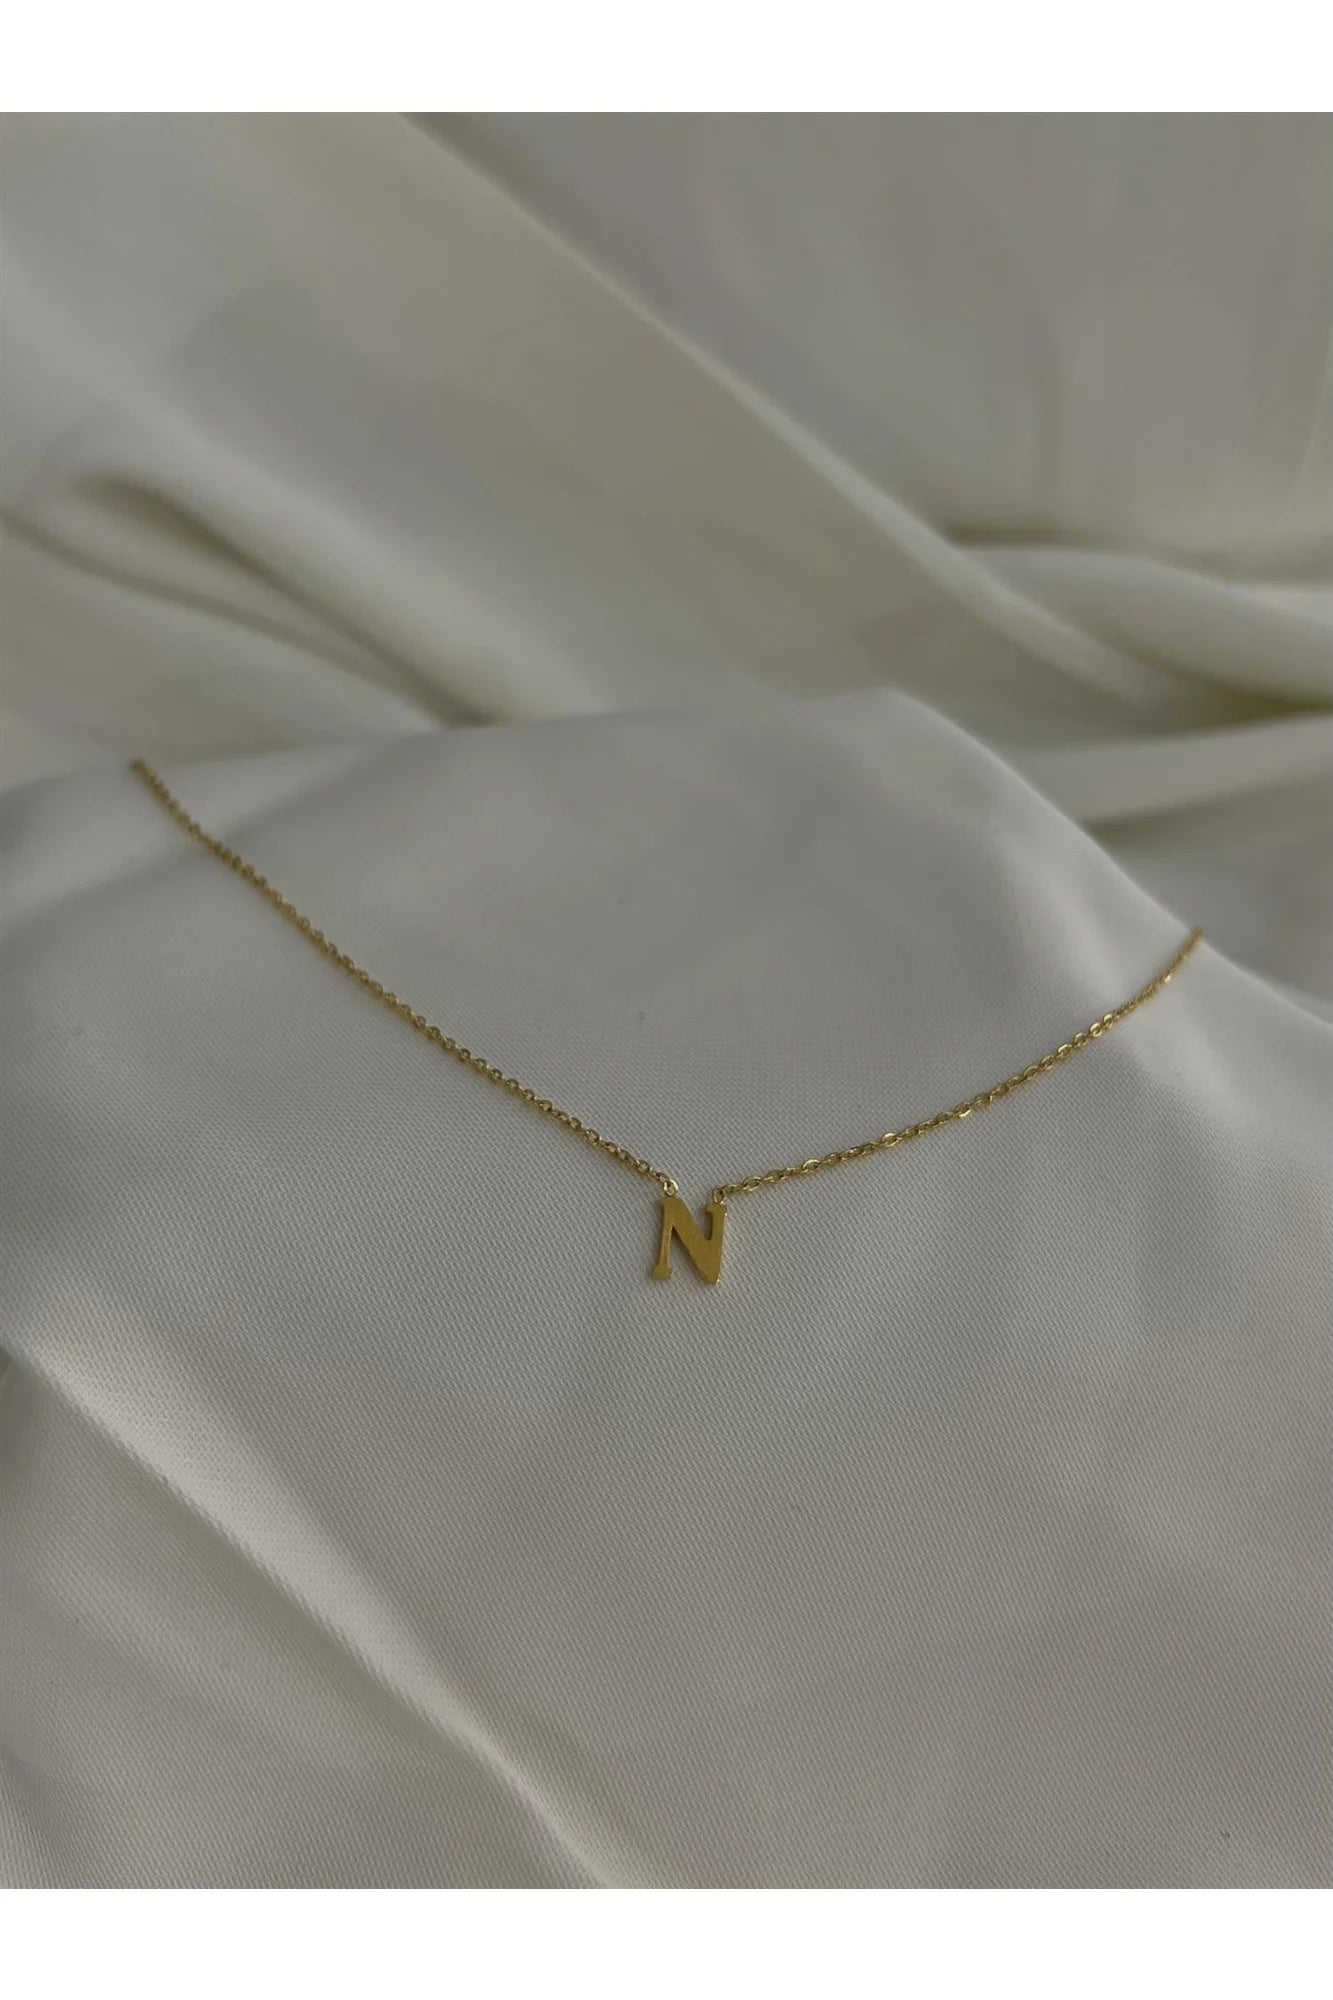 N necklace - Tilbehør